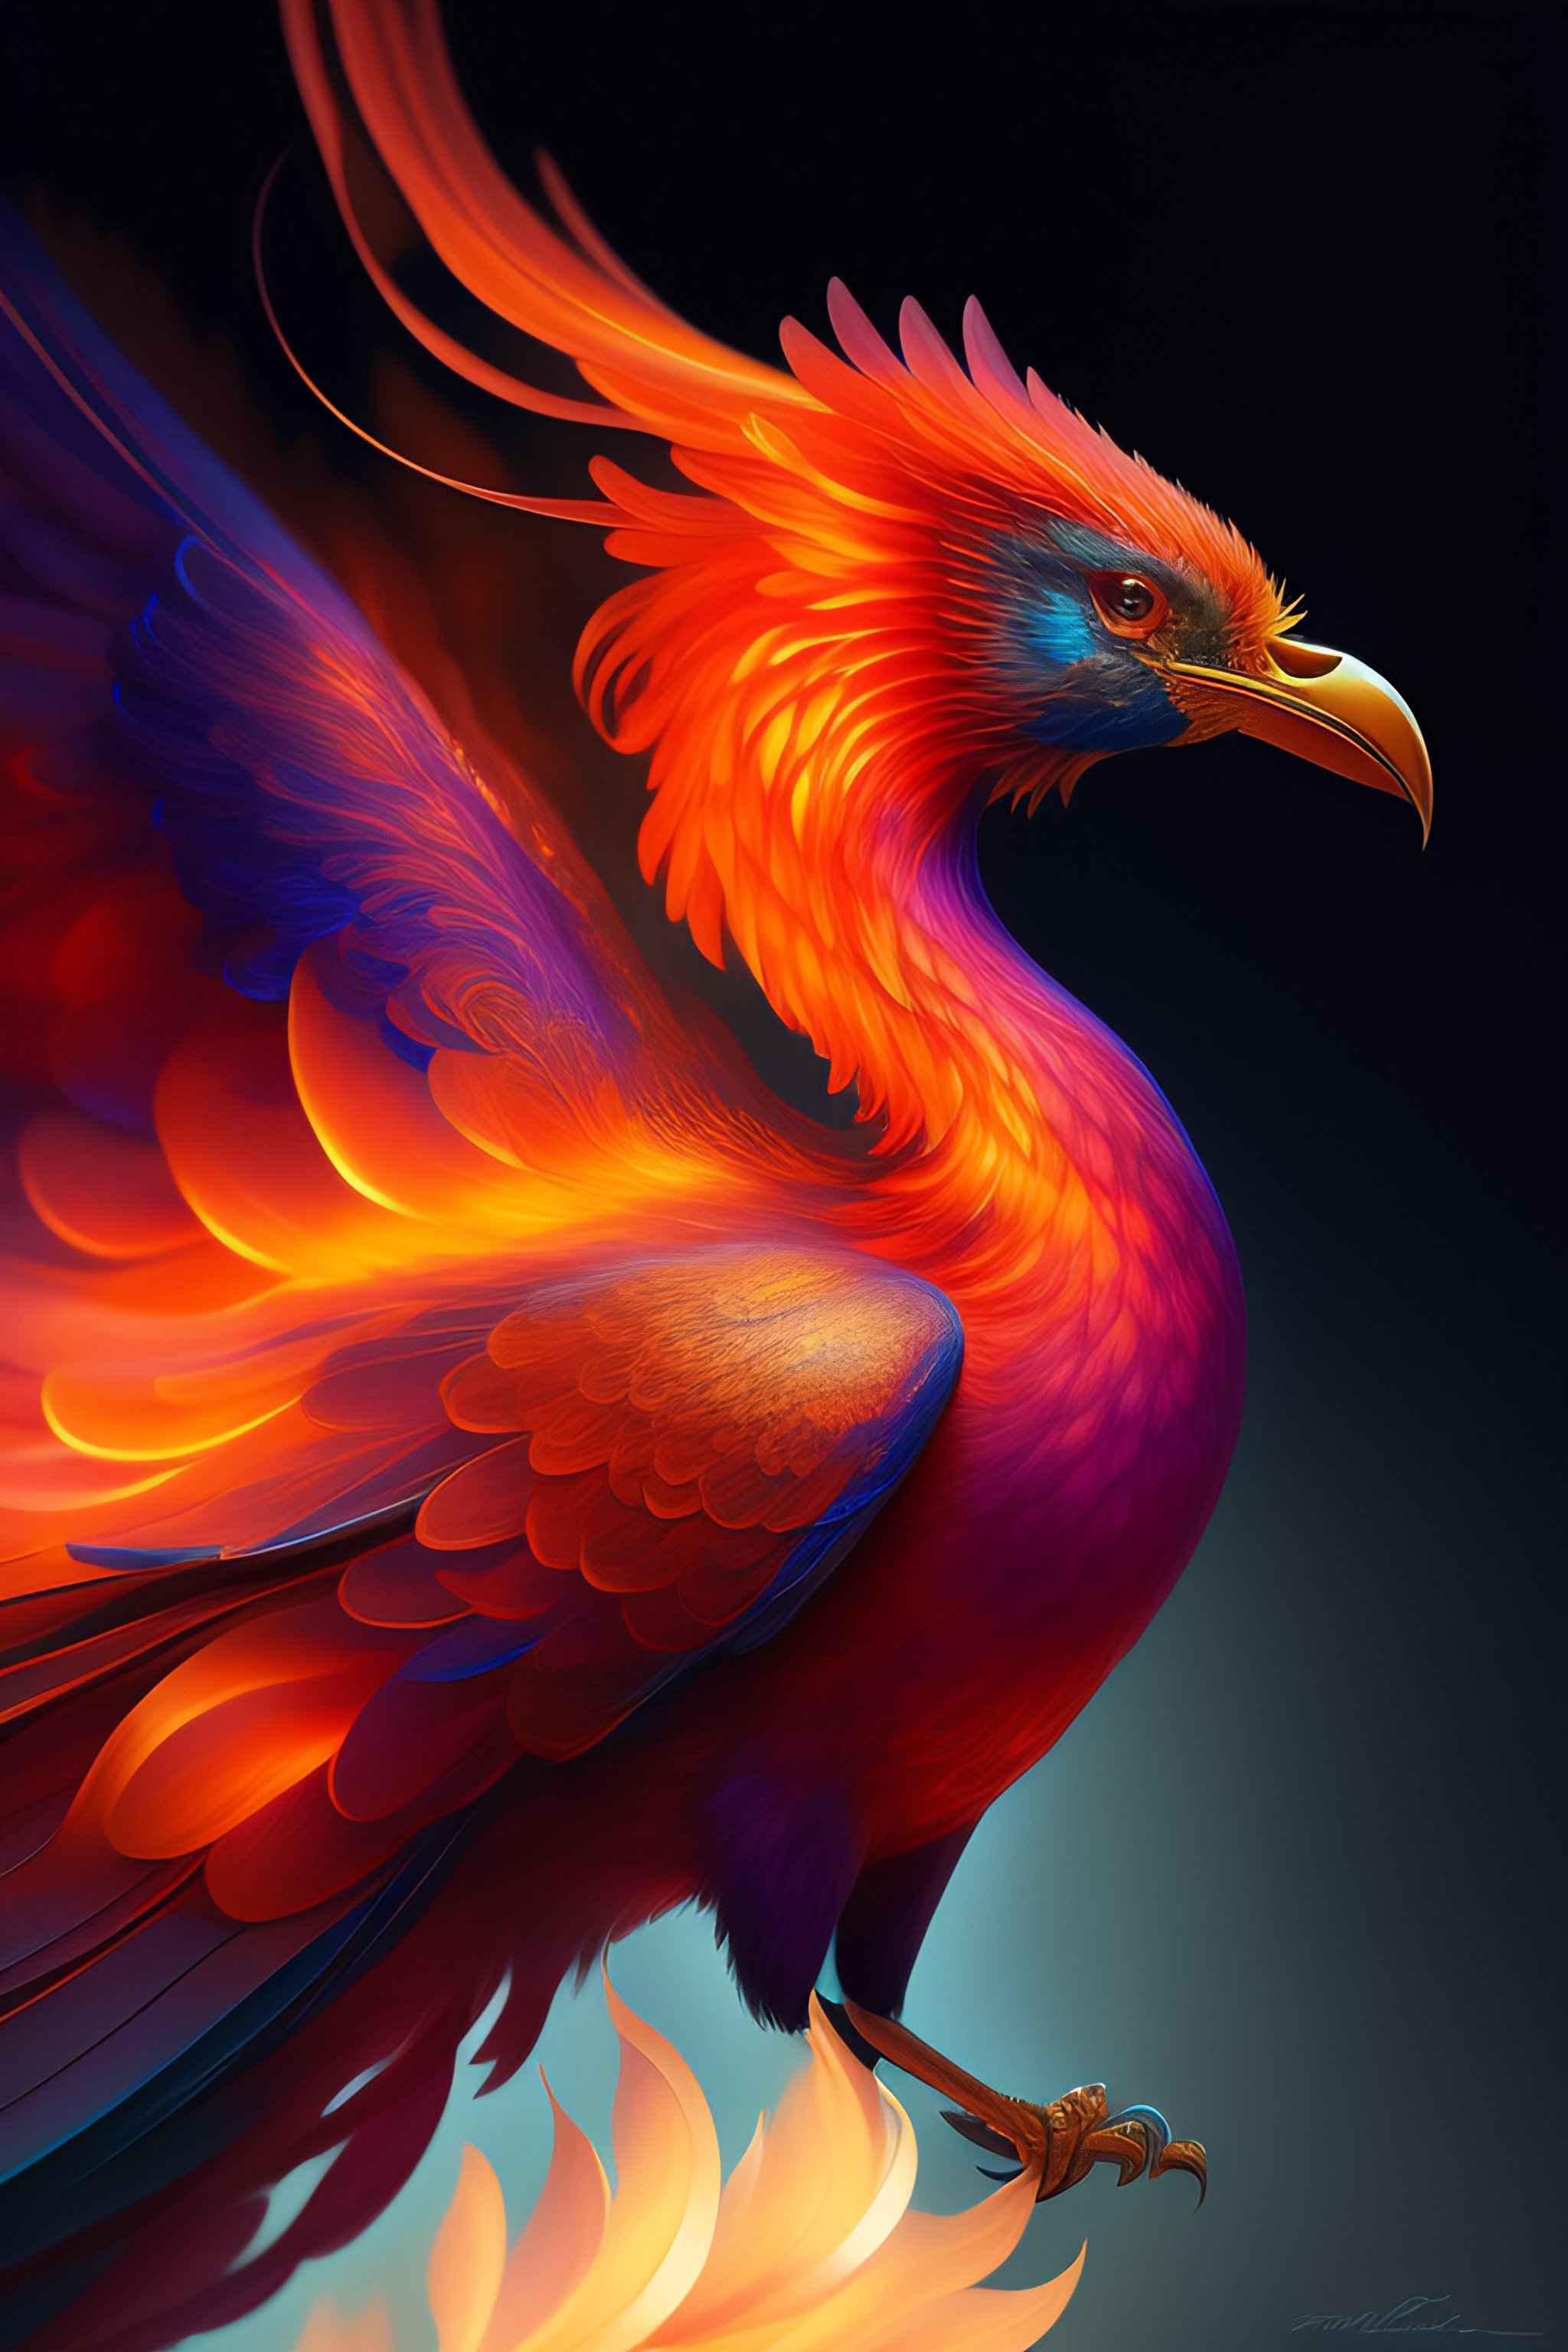 ArtStation - Phoenix Bird Portrait Watercolor Painting